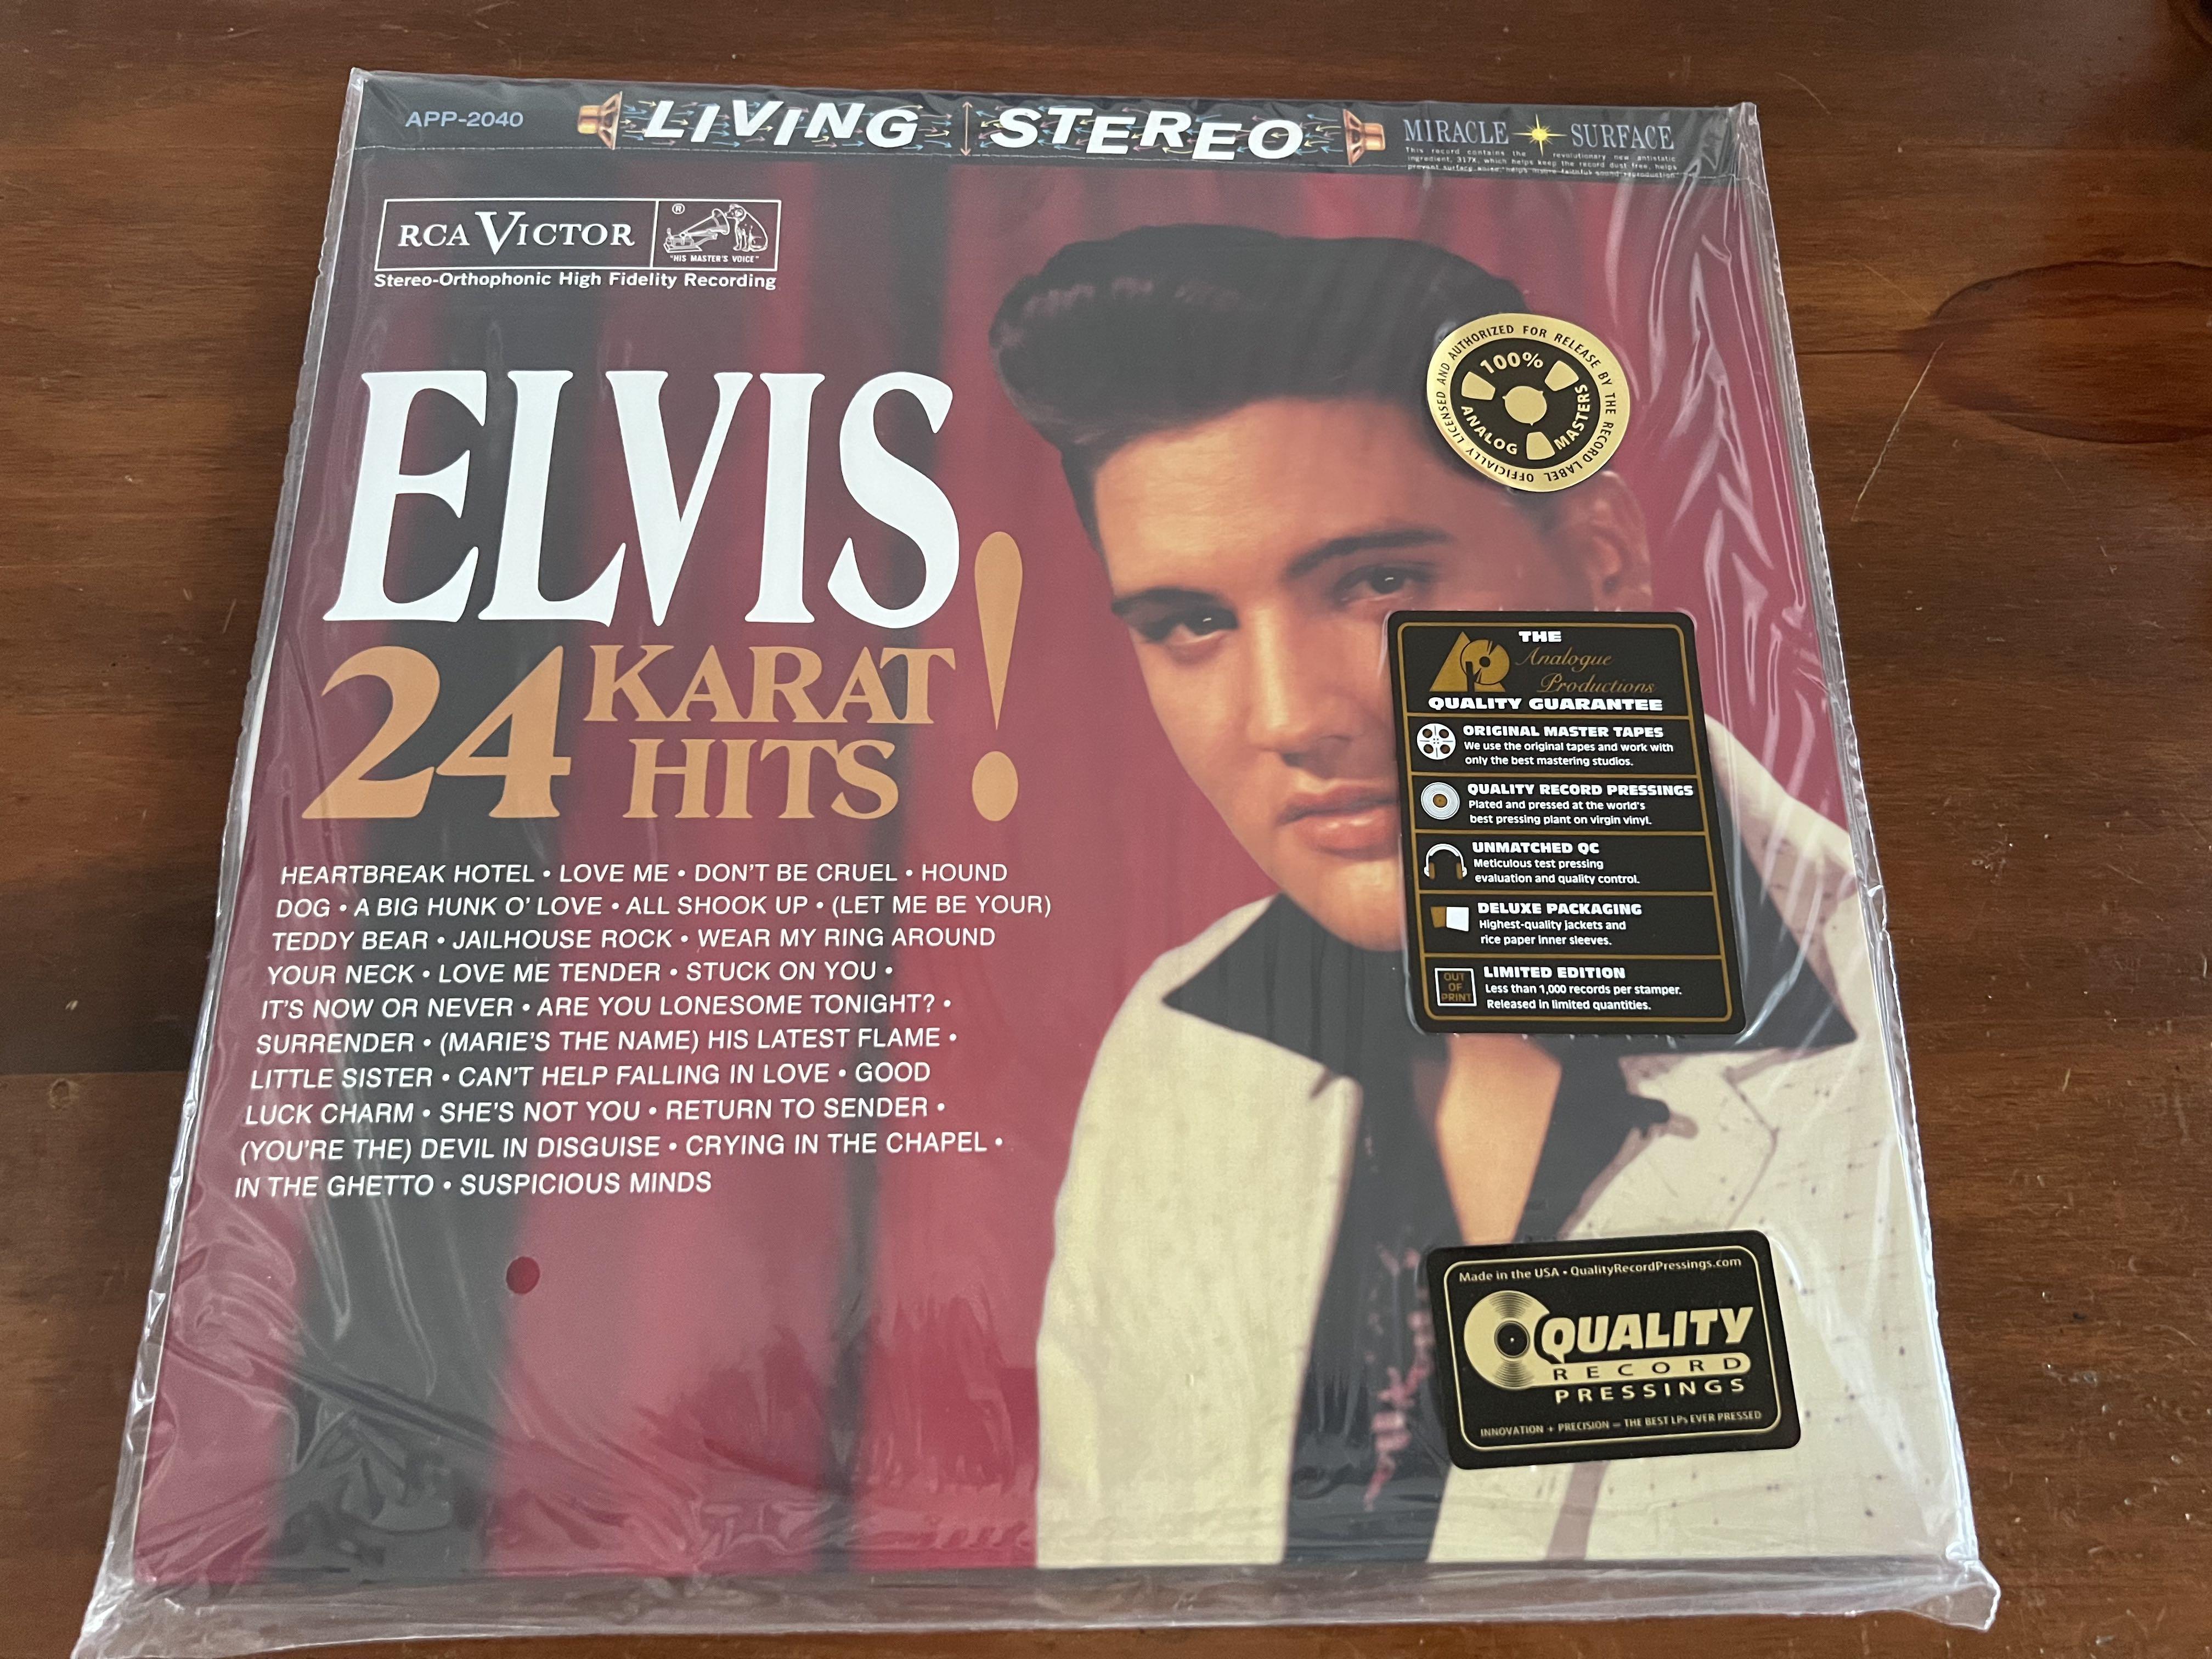 The Best of Elvis Presley 3LP Star Box Set